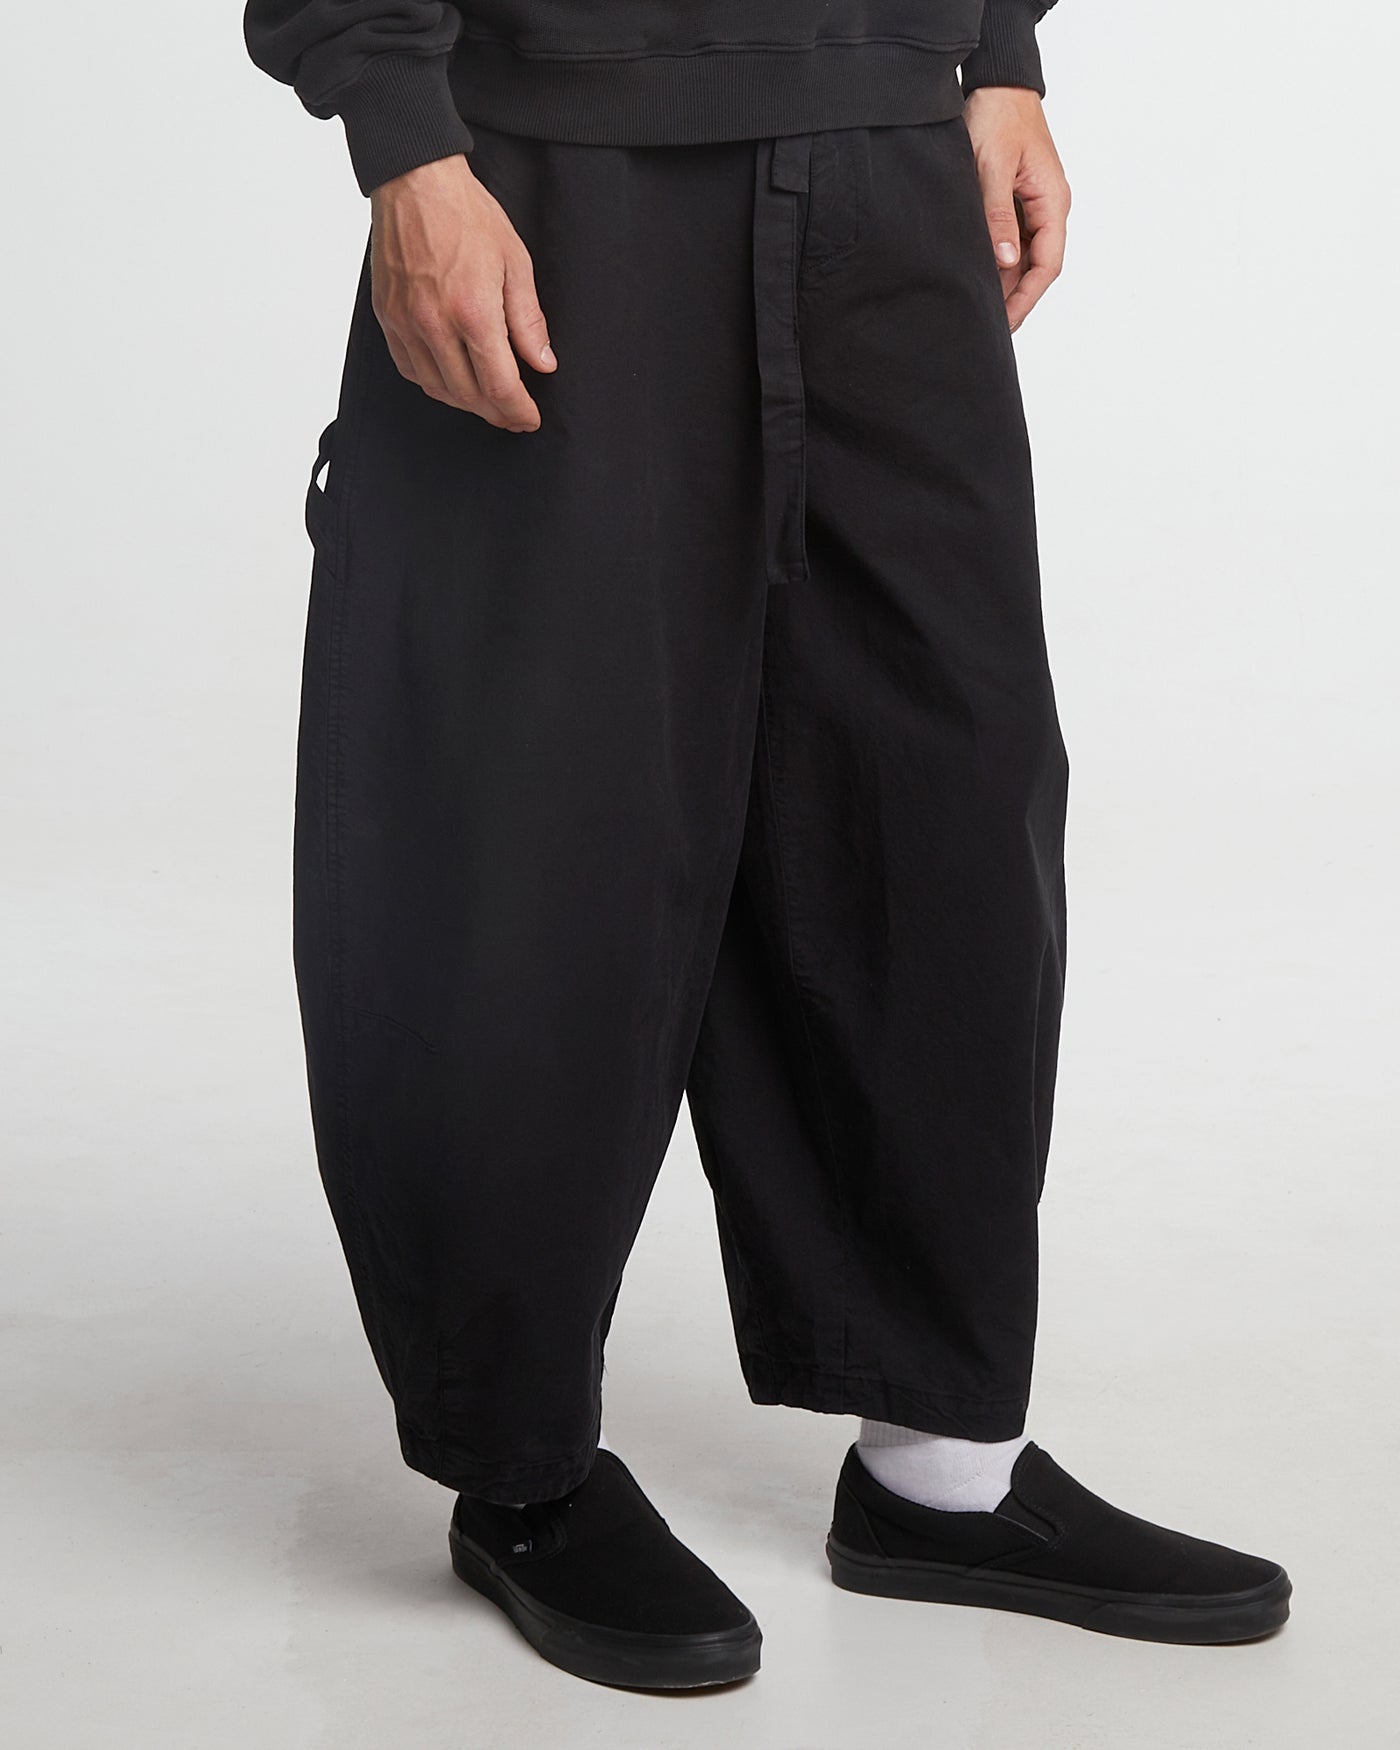 Sultan Pants Cotton Linen Black